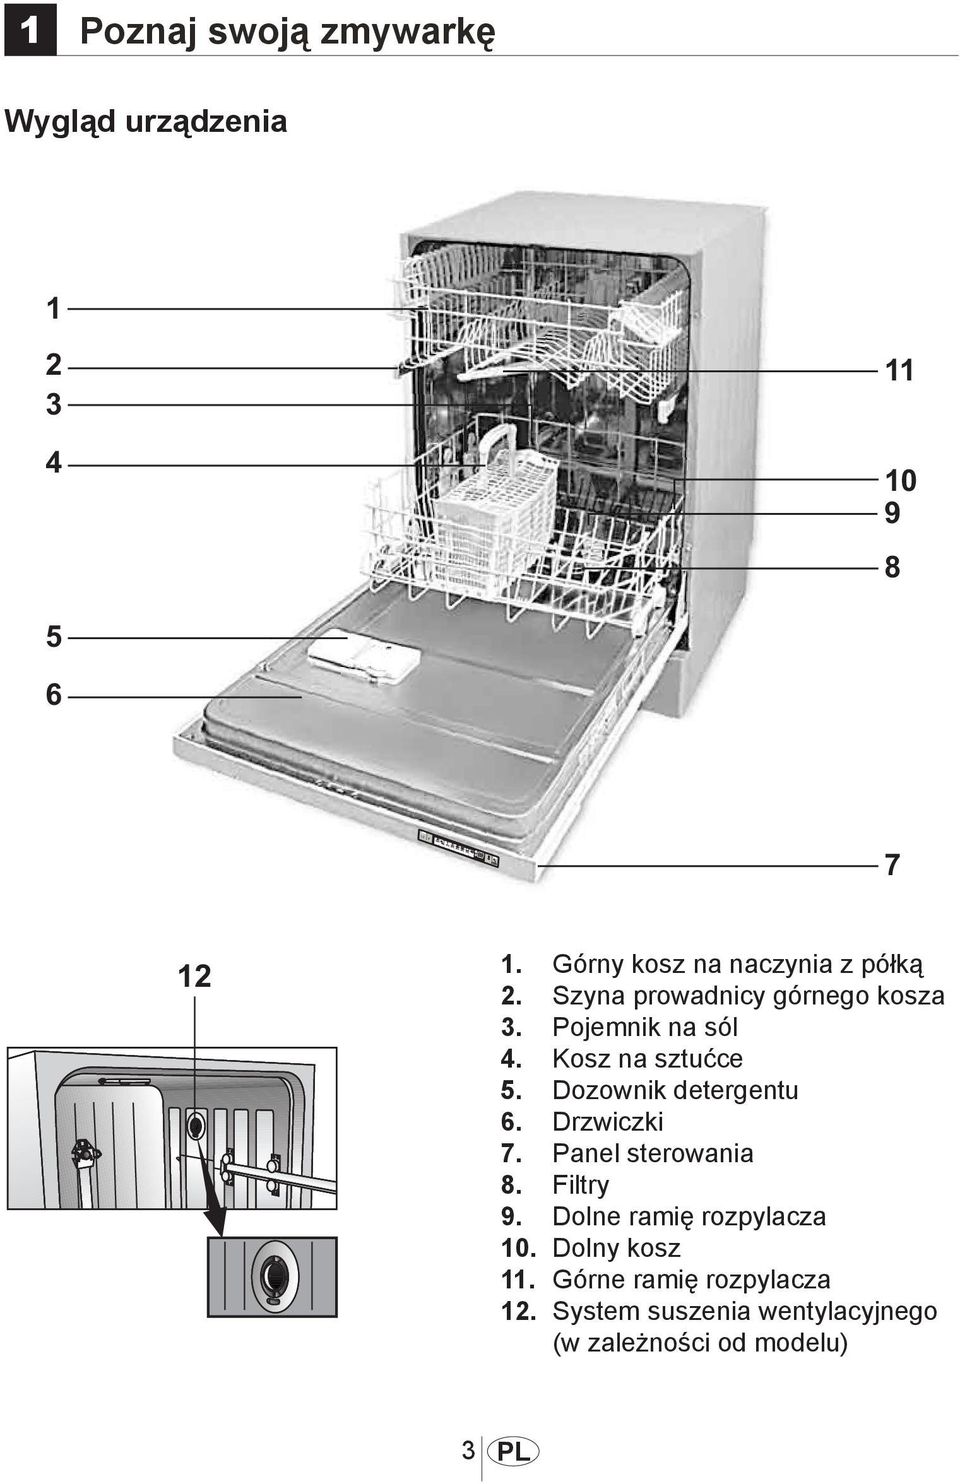 Dozownik detergentu 6. Drzwiczki 7. Panel sterowania 8. Filtry 9.